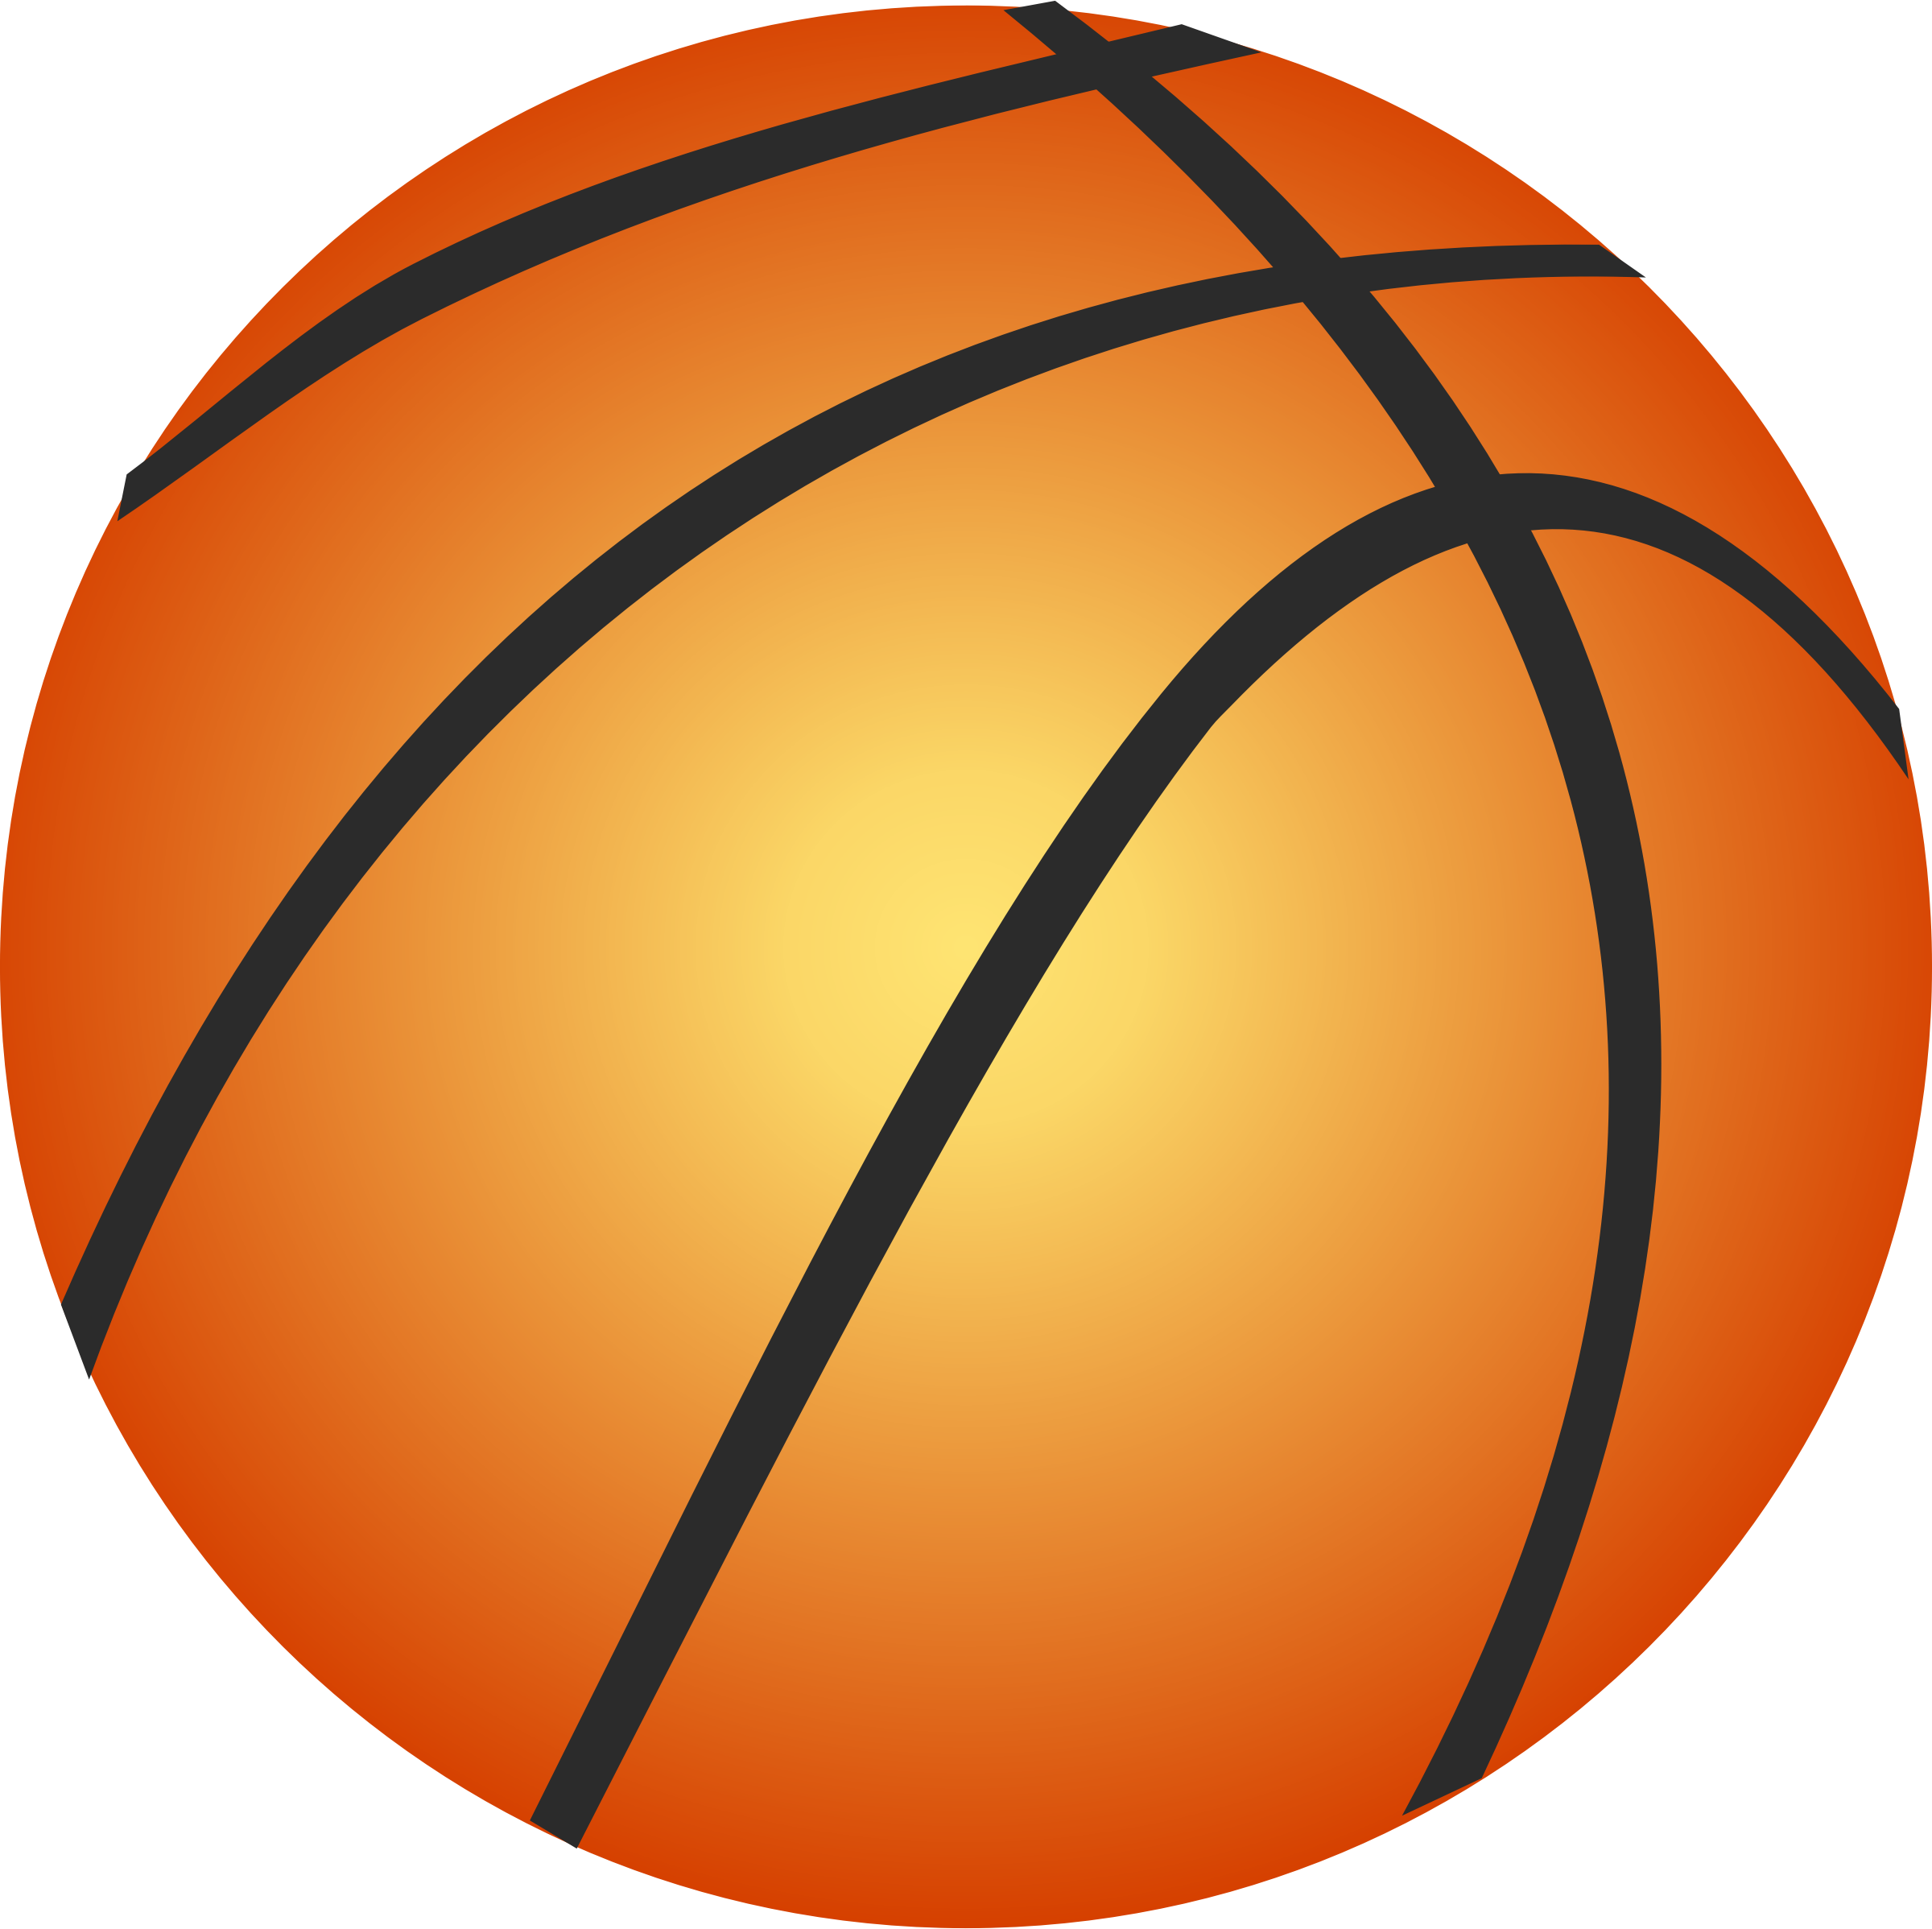 letter clipart basketball